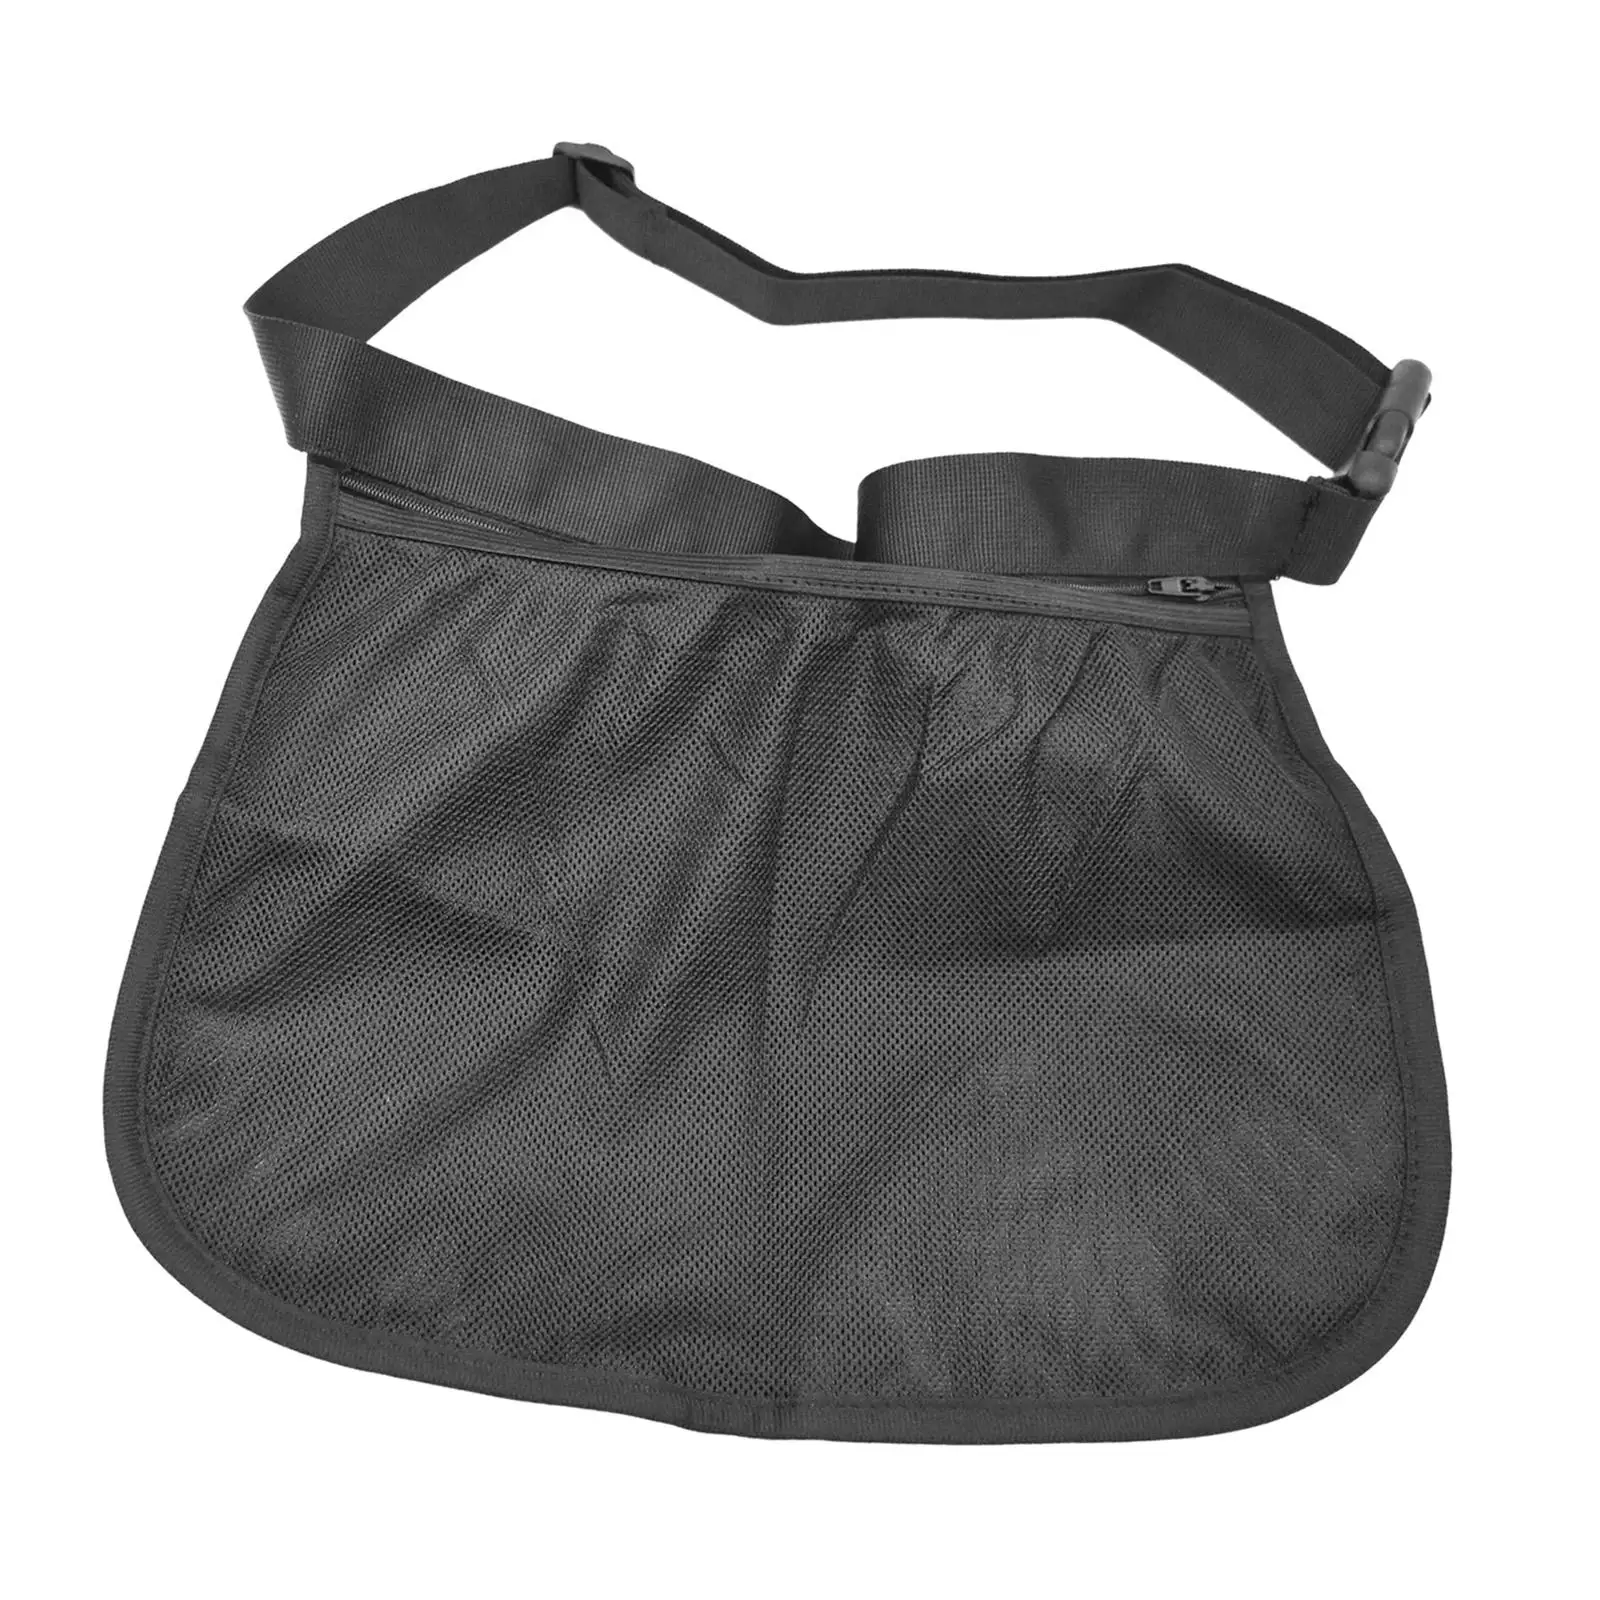 Tennis Ball Holder Gadgets Waist Pouch Bag Pickleball Ball Waist Pouch Outdoor Ball Storage Bag for Exercise Fitness Women Men